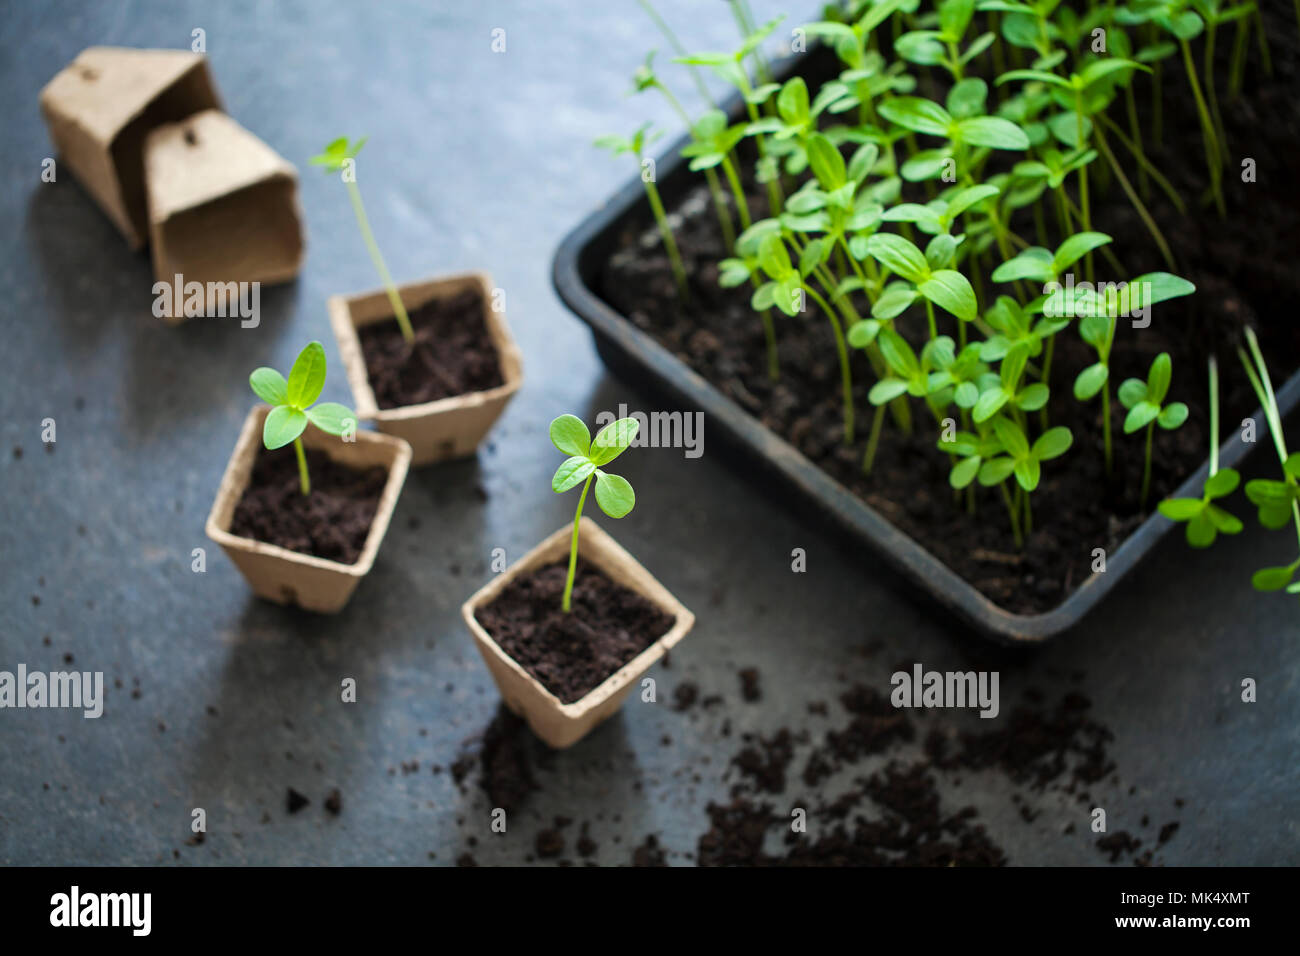 Les jeunes plants sont transplantés à partir de pots de bac Banque D'Images